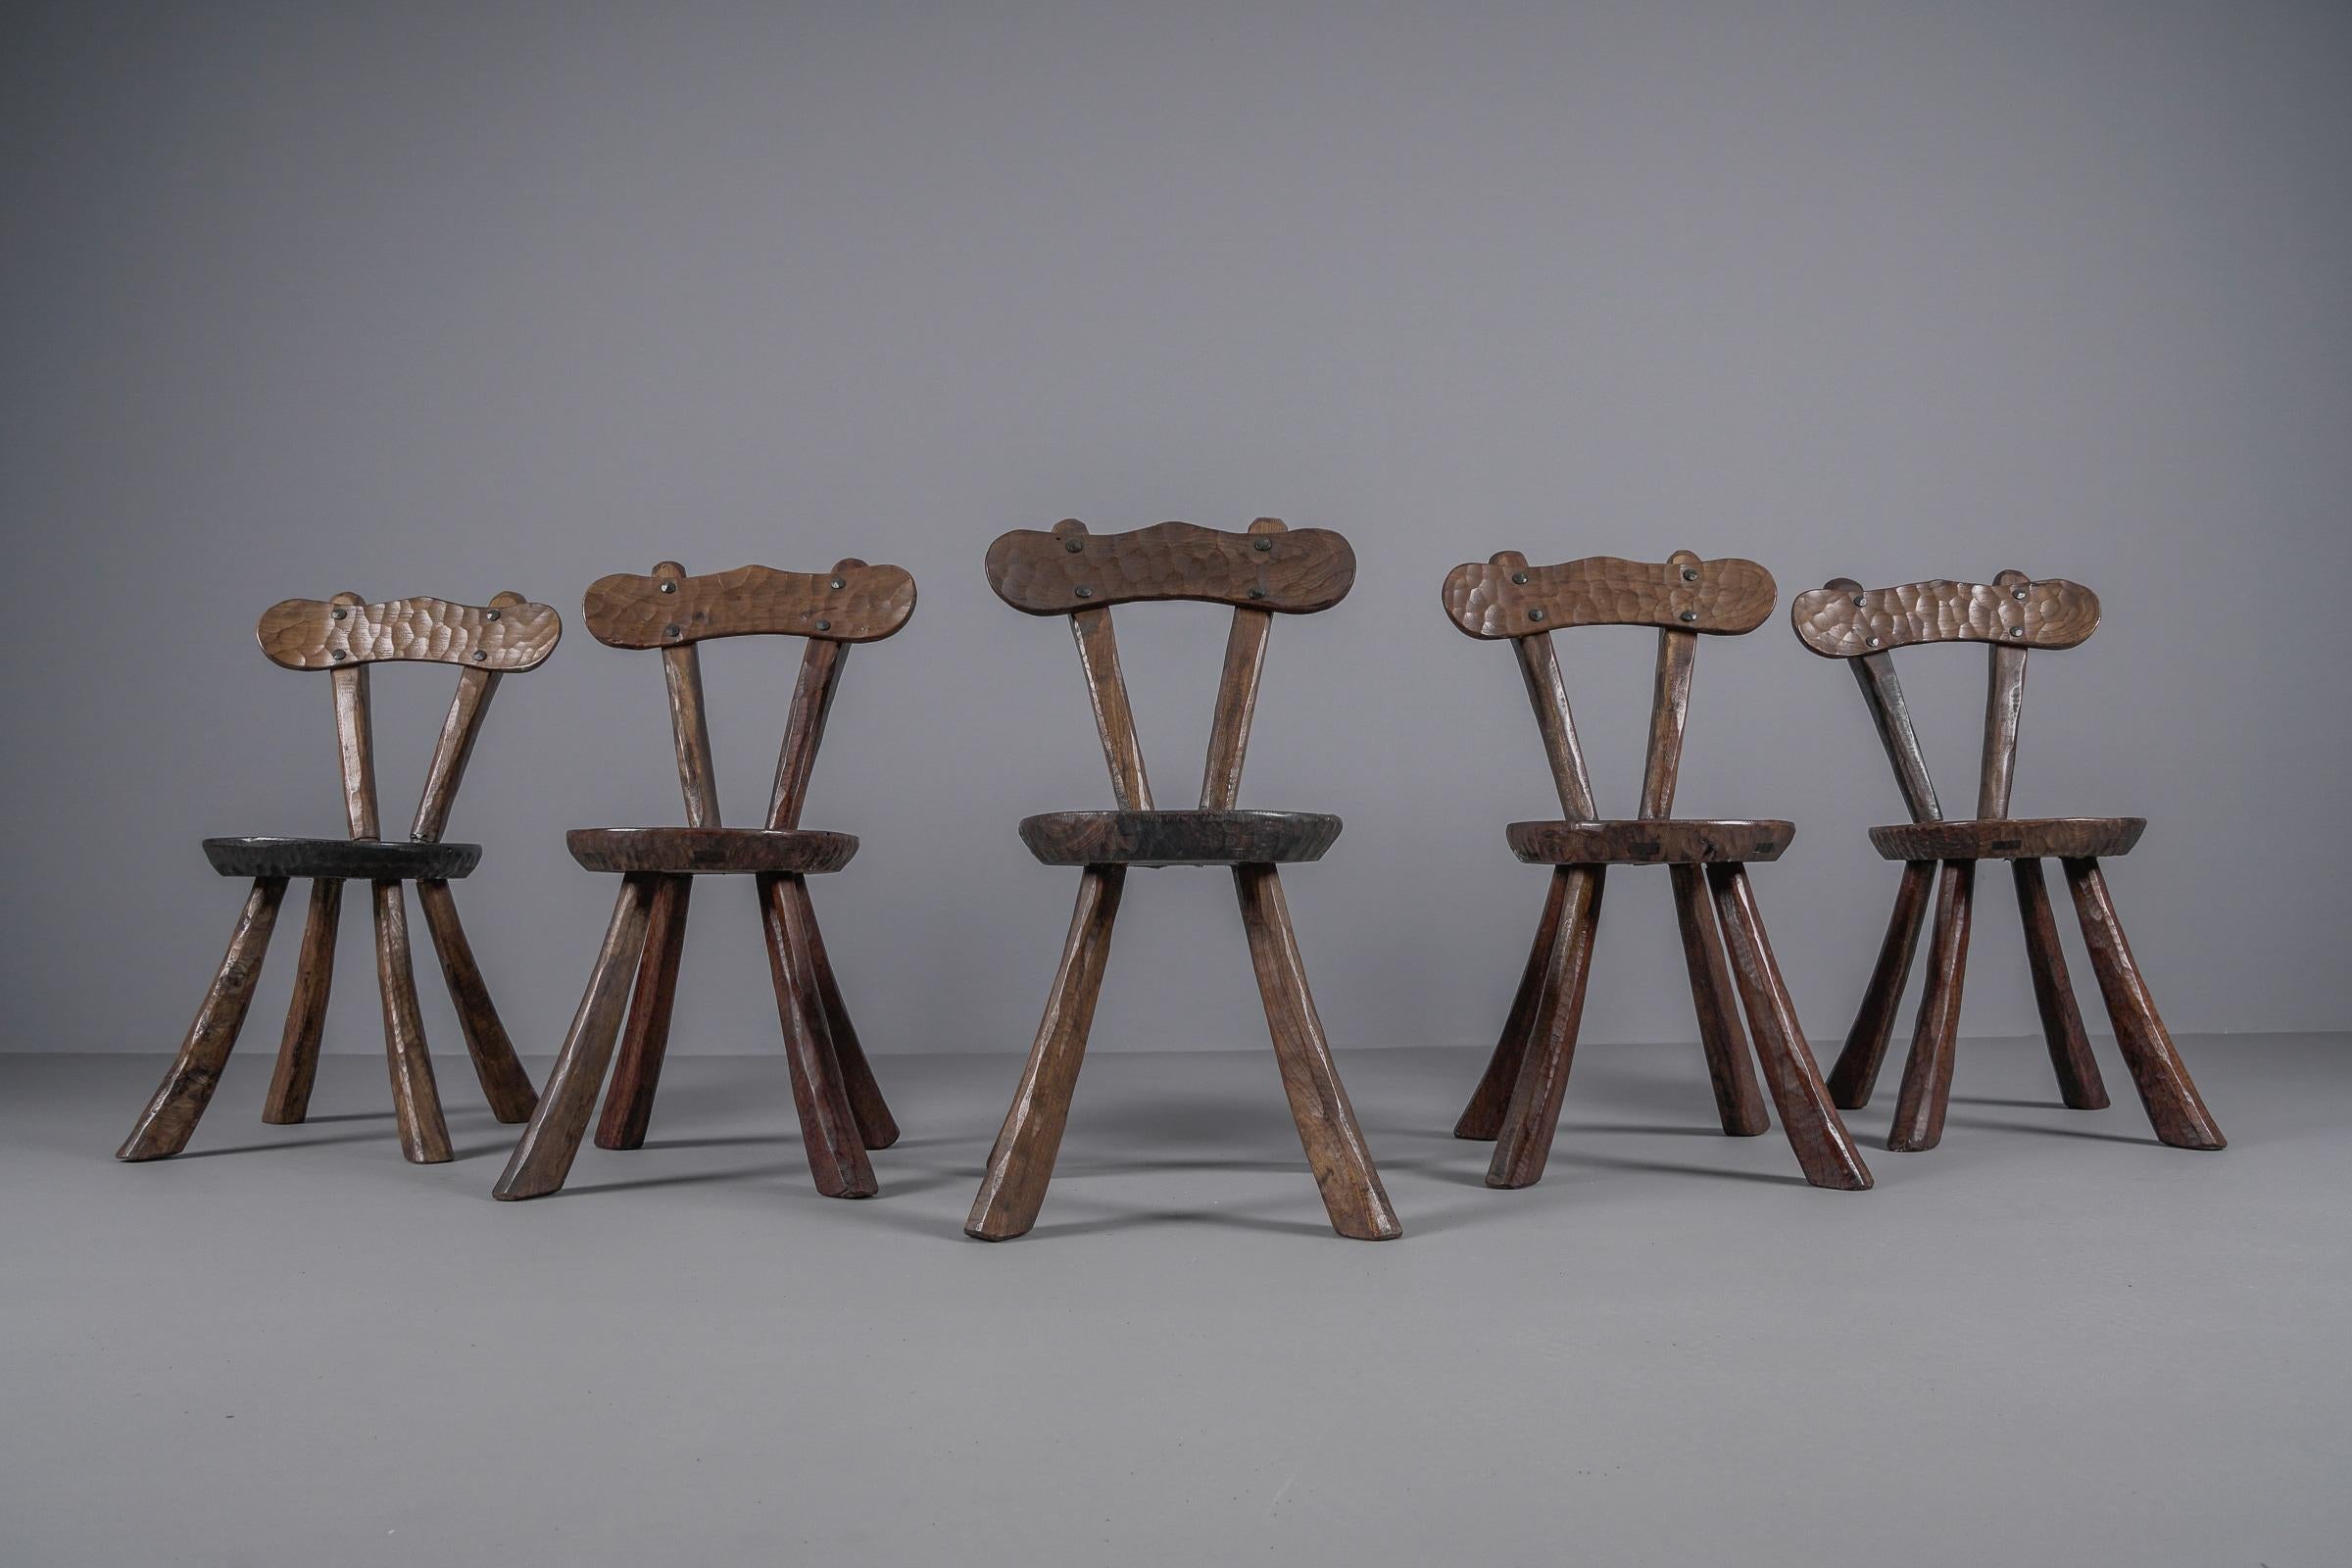 Brutalistisch-rustikal-moderne skulpturale Stühle aus Ulme im Stil von Alexandre Noll

Hier werden die fünf Stühle im Set verkauft.

Nur die Stühle allein werden hier verkauft, der Couchtisch ist in einem anderen Angebot.
Beschreibung bearbeiten